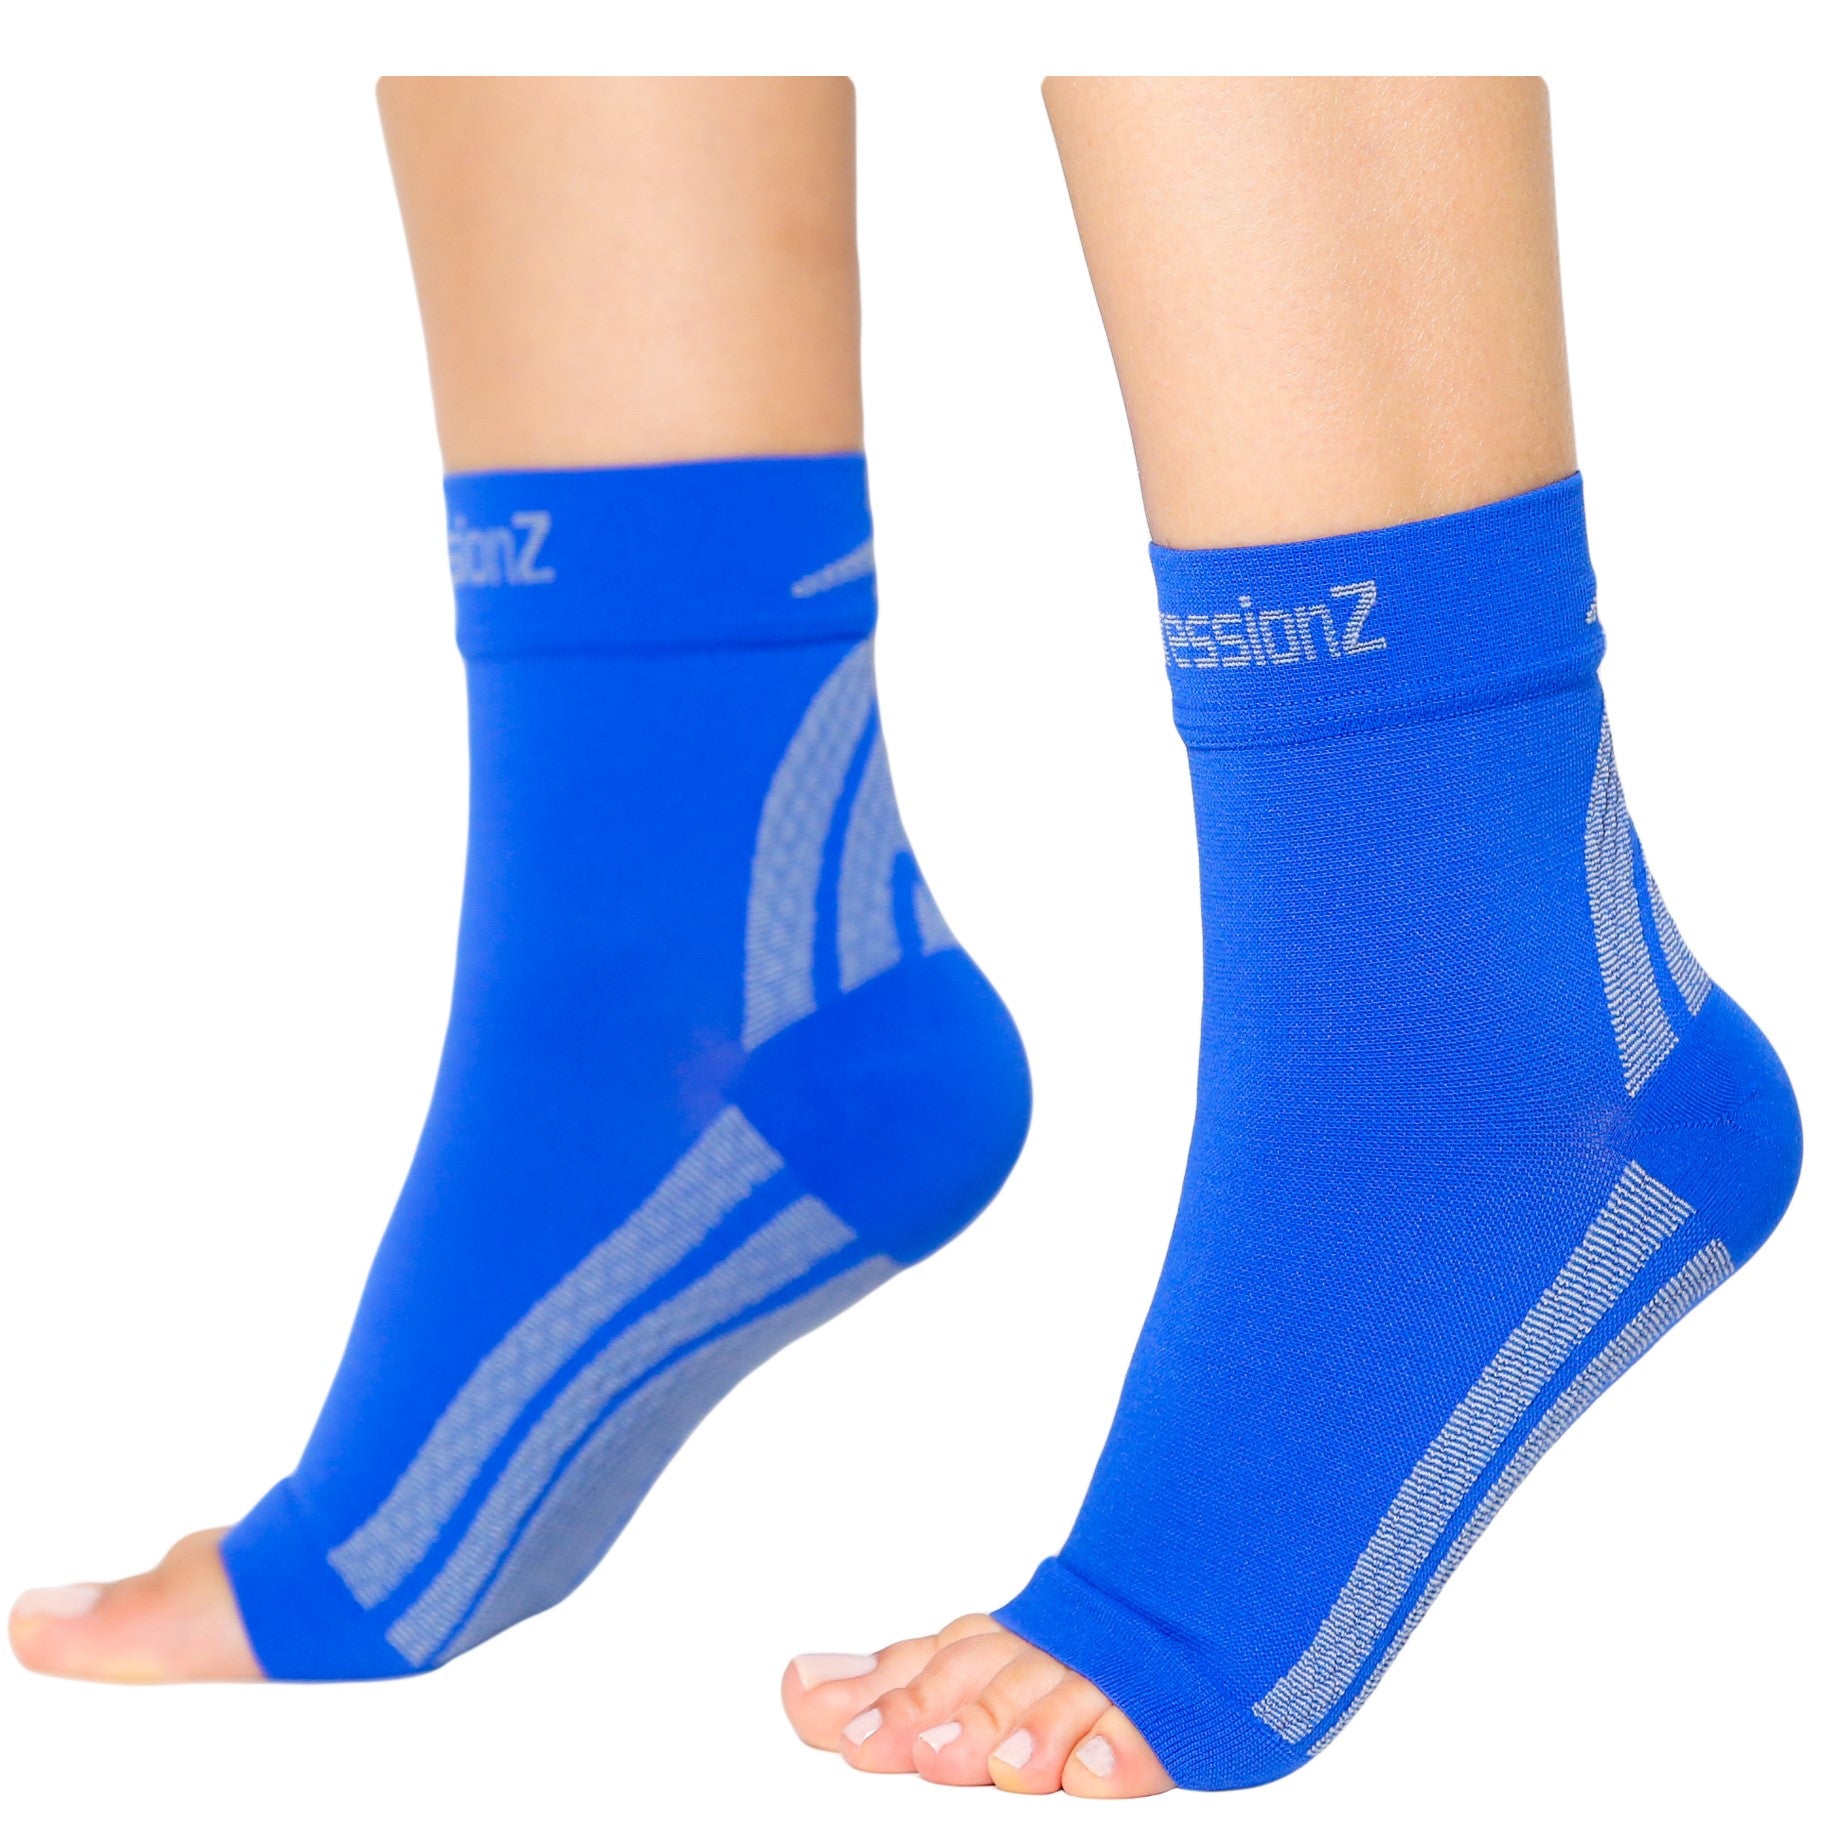 Foot Sleeves - Blue